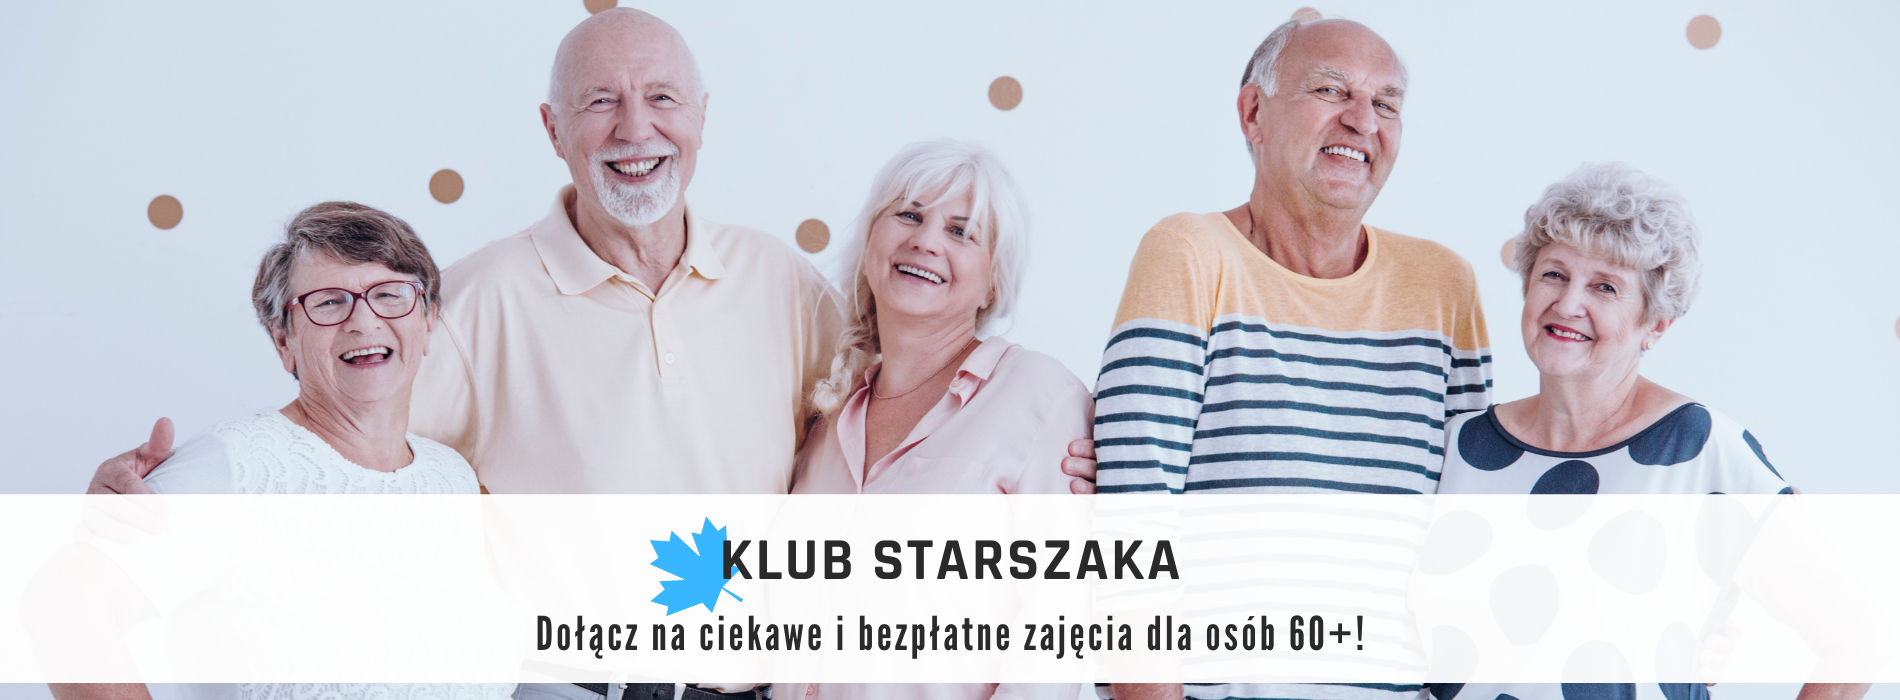 Uśmiechnięta grupa seniorek i seniorów. Klub Starszaka zaprasza osoby 60+ na bezpłatne i ciekawe zajęcia